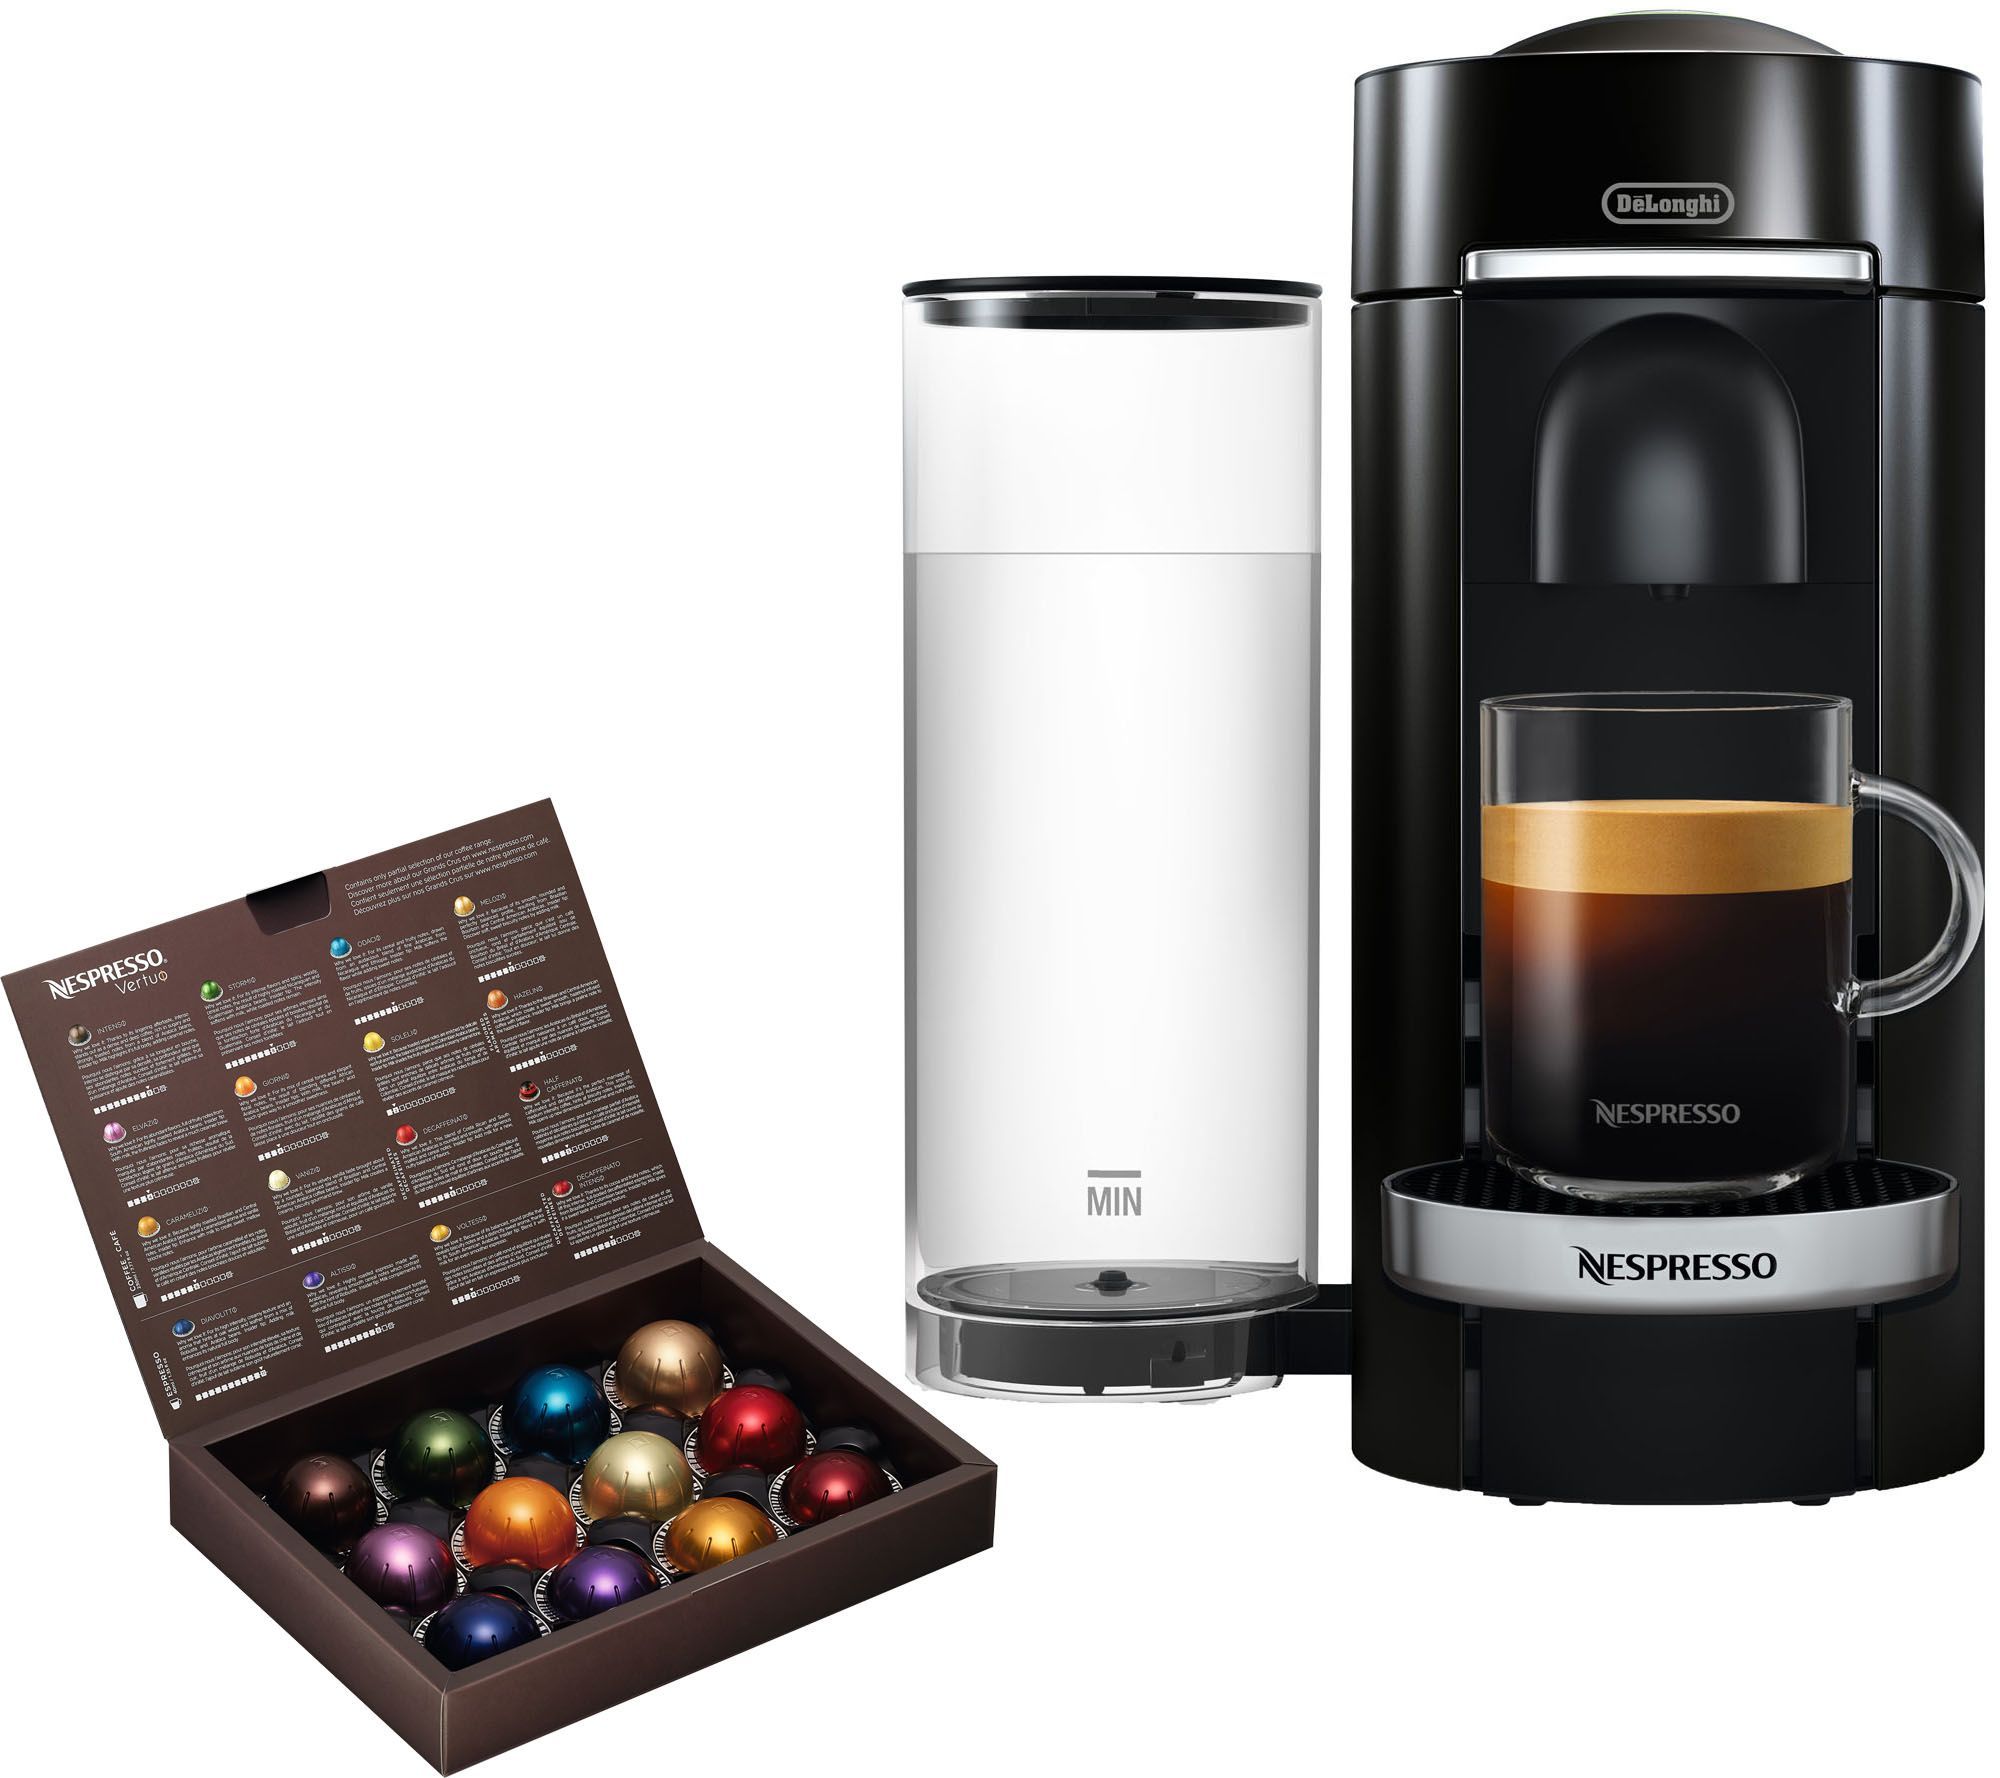 Nespresso Vertuo Plus Deluxe Coffee Machine b yDeLonghi - QVC.com | QVC